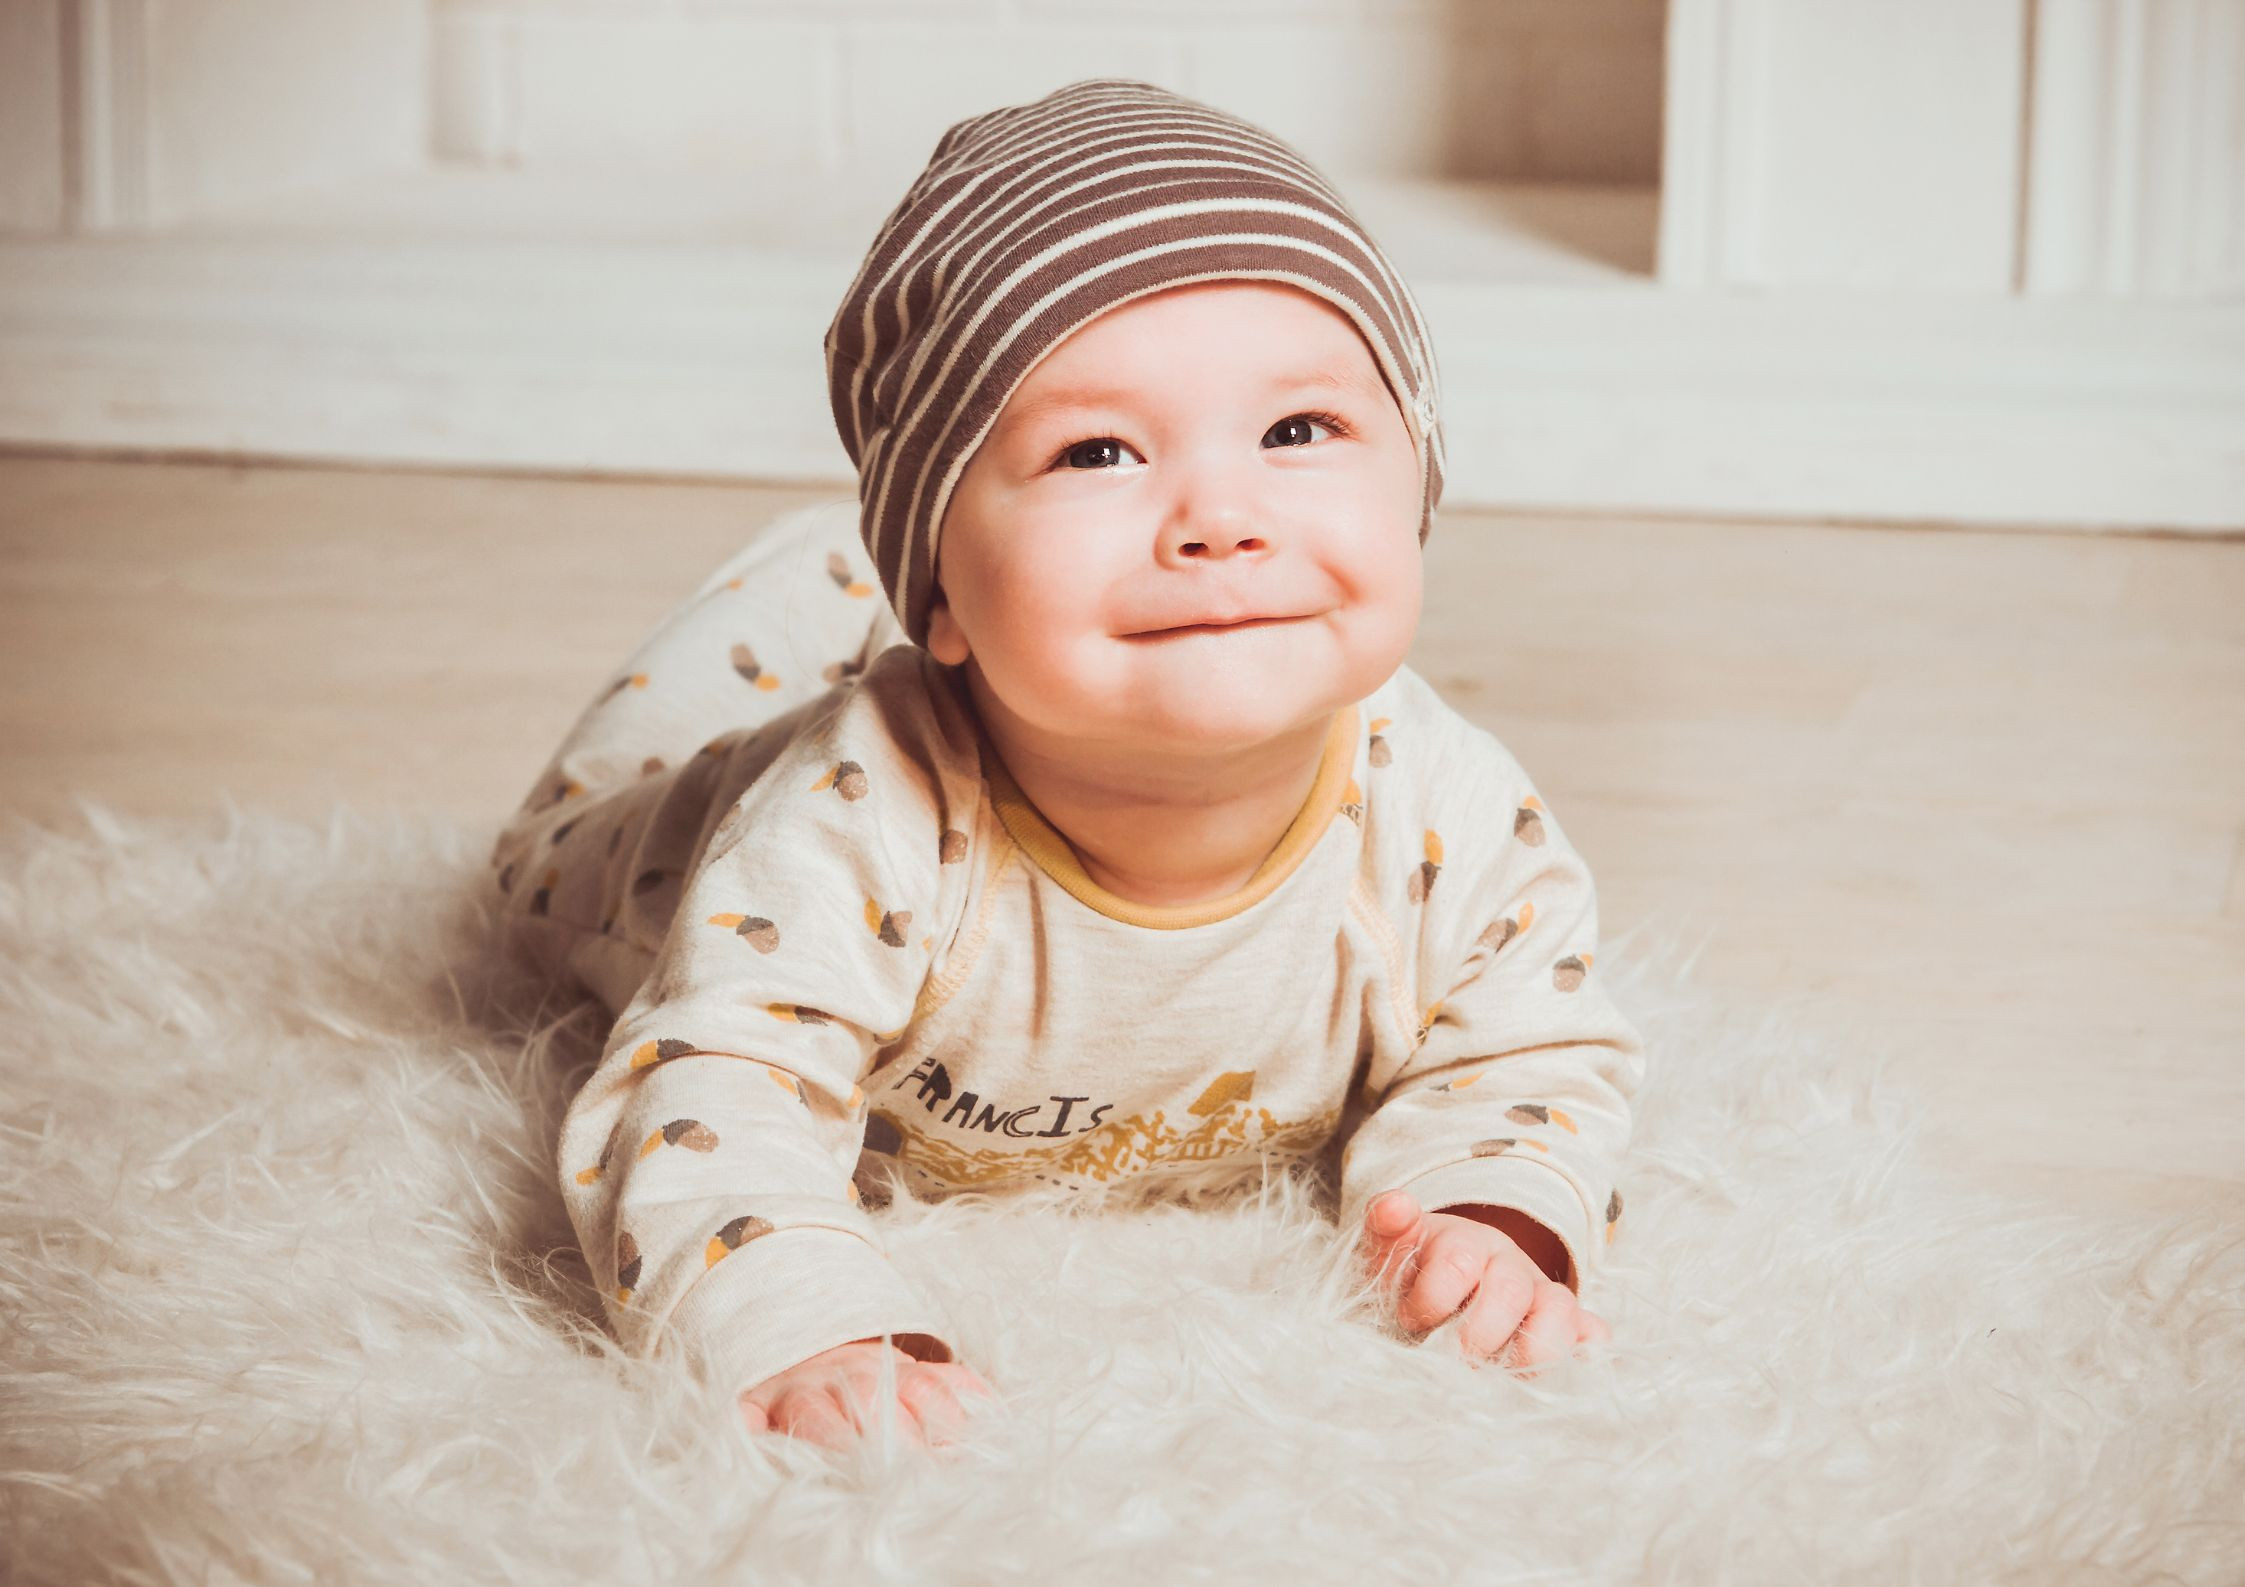 Wędrujące jądra u niemowląt - co to jest i jak sobie z tym poradzić?